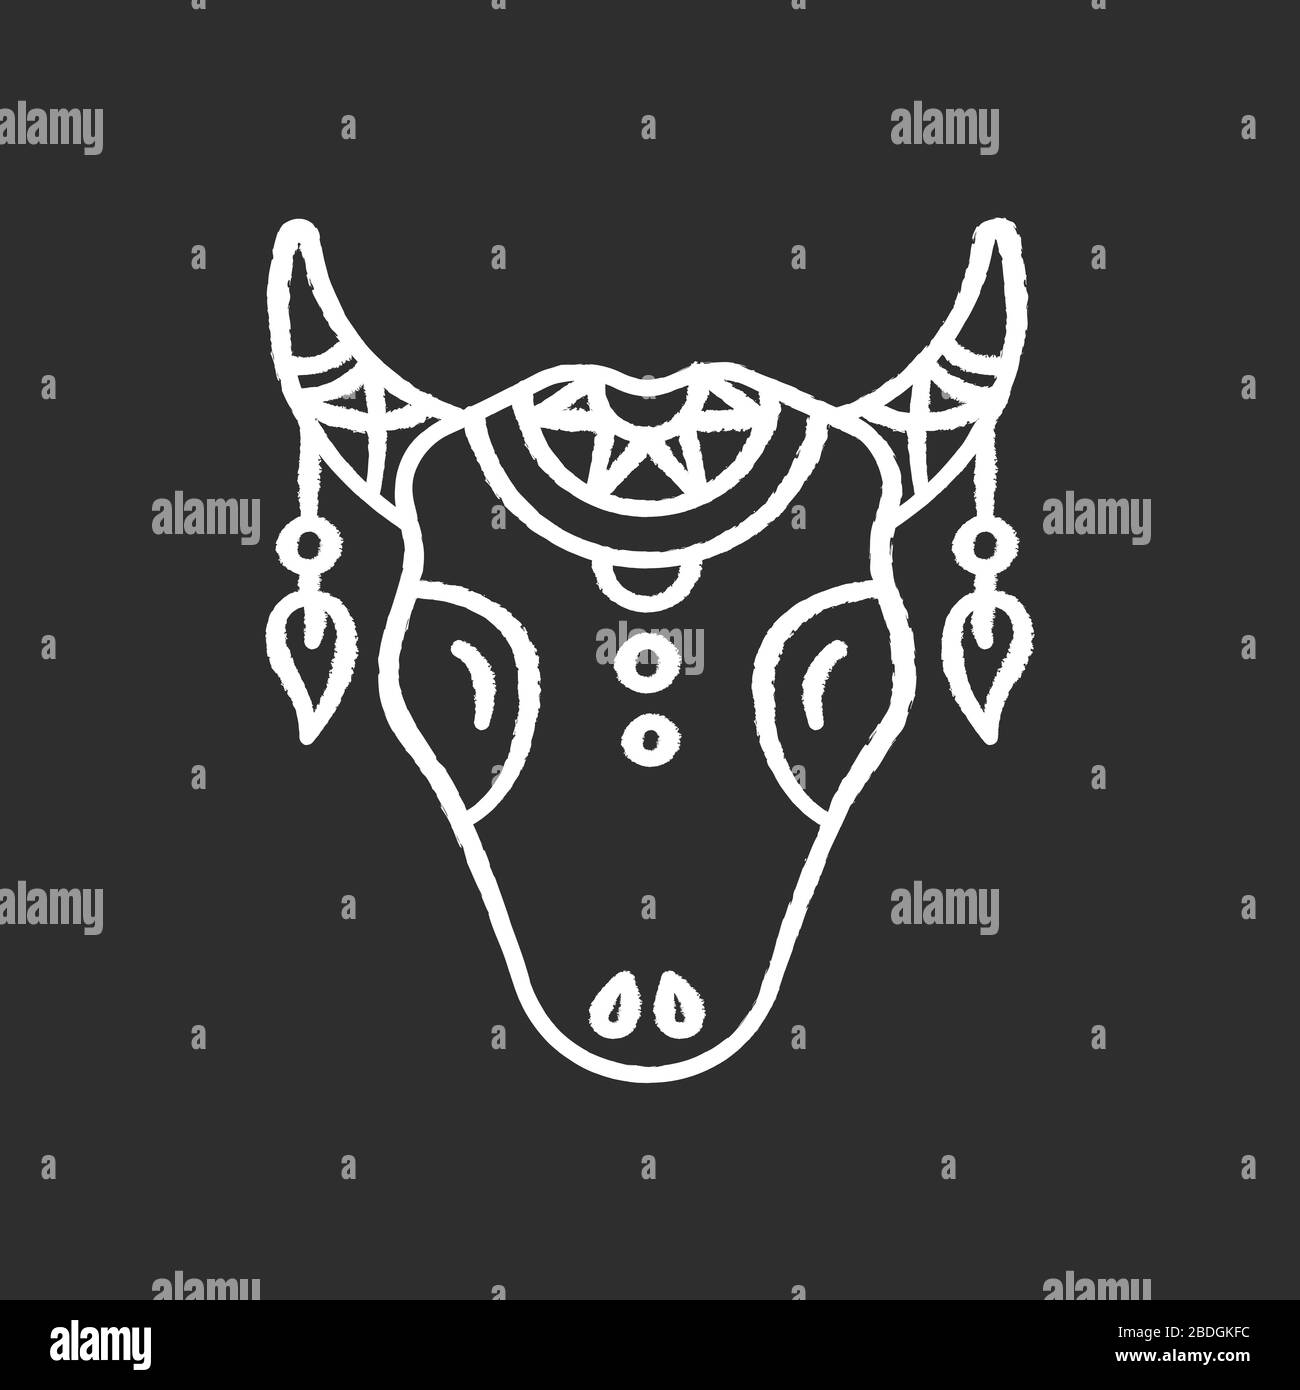 Icône blanche craie de tête de bétail tribale sur fond noir. Crâne de vache avec plumes, symbole indien amérindien. Tête d'animal sauvage, amulette mystique de tribu Illustration de Vecteur